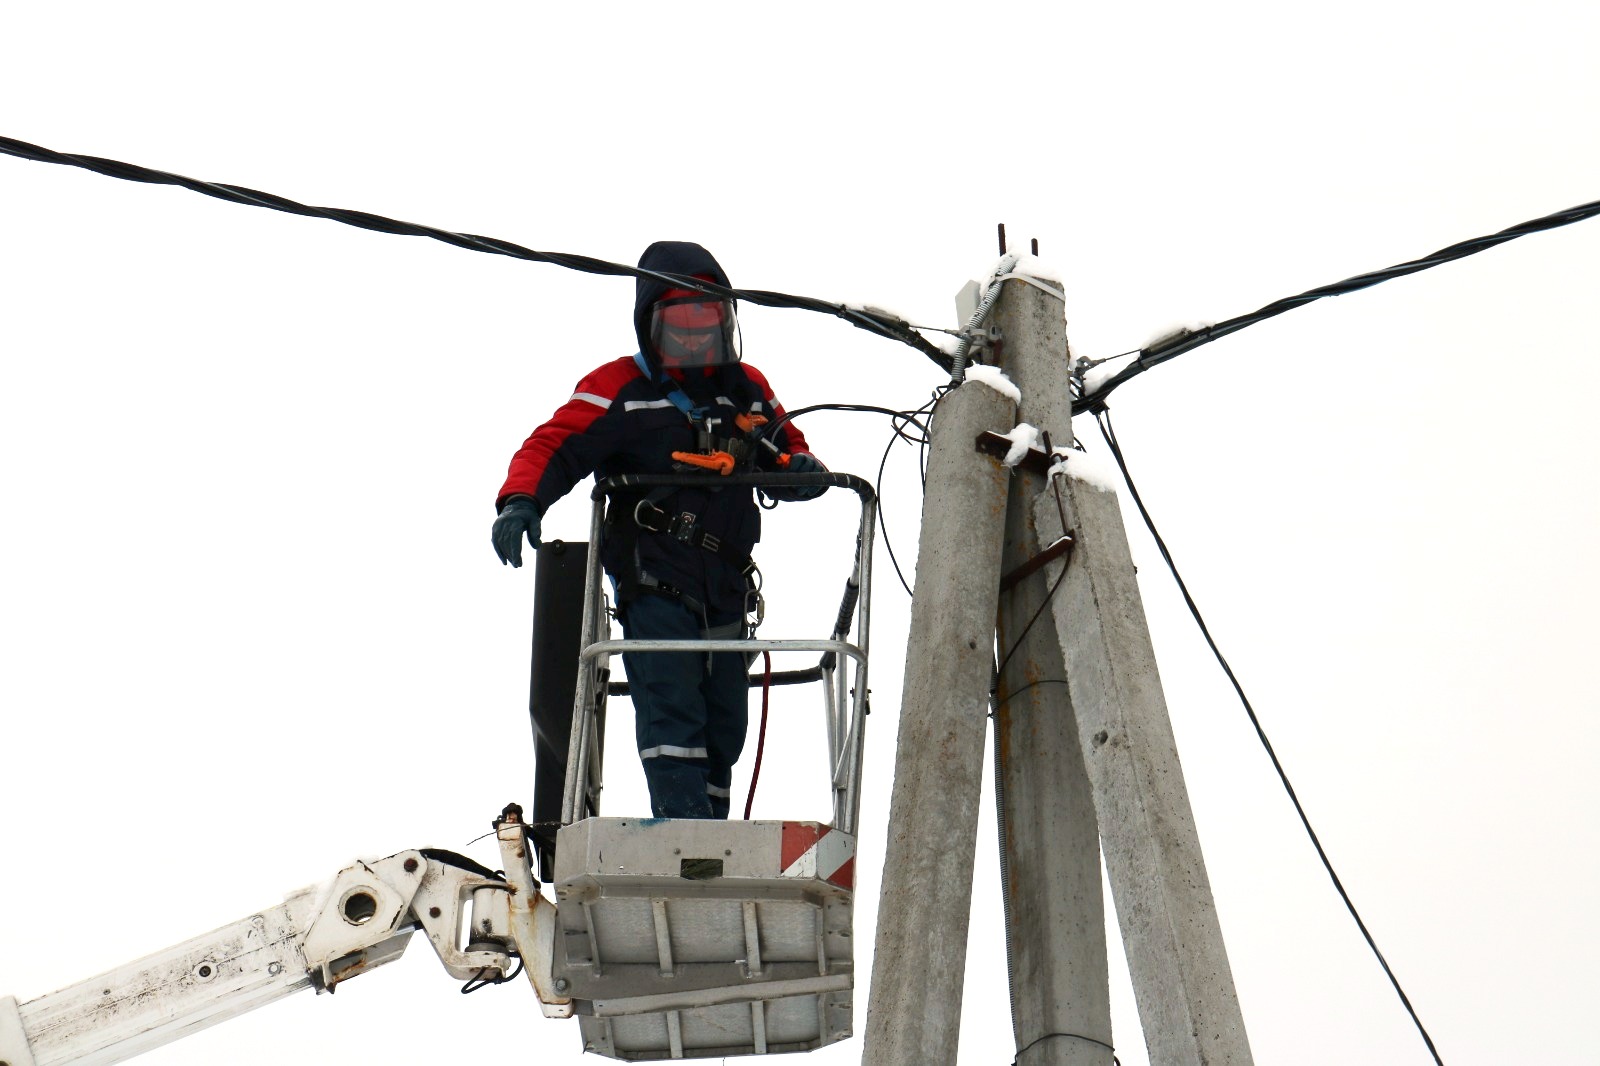 Энергетики филиала «Калугаэнерго» готовятся к работе в условиях непогоды.